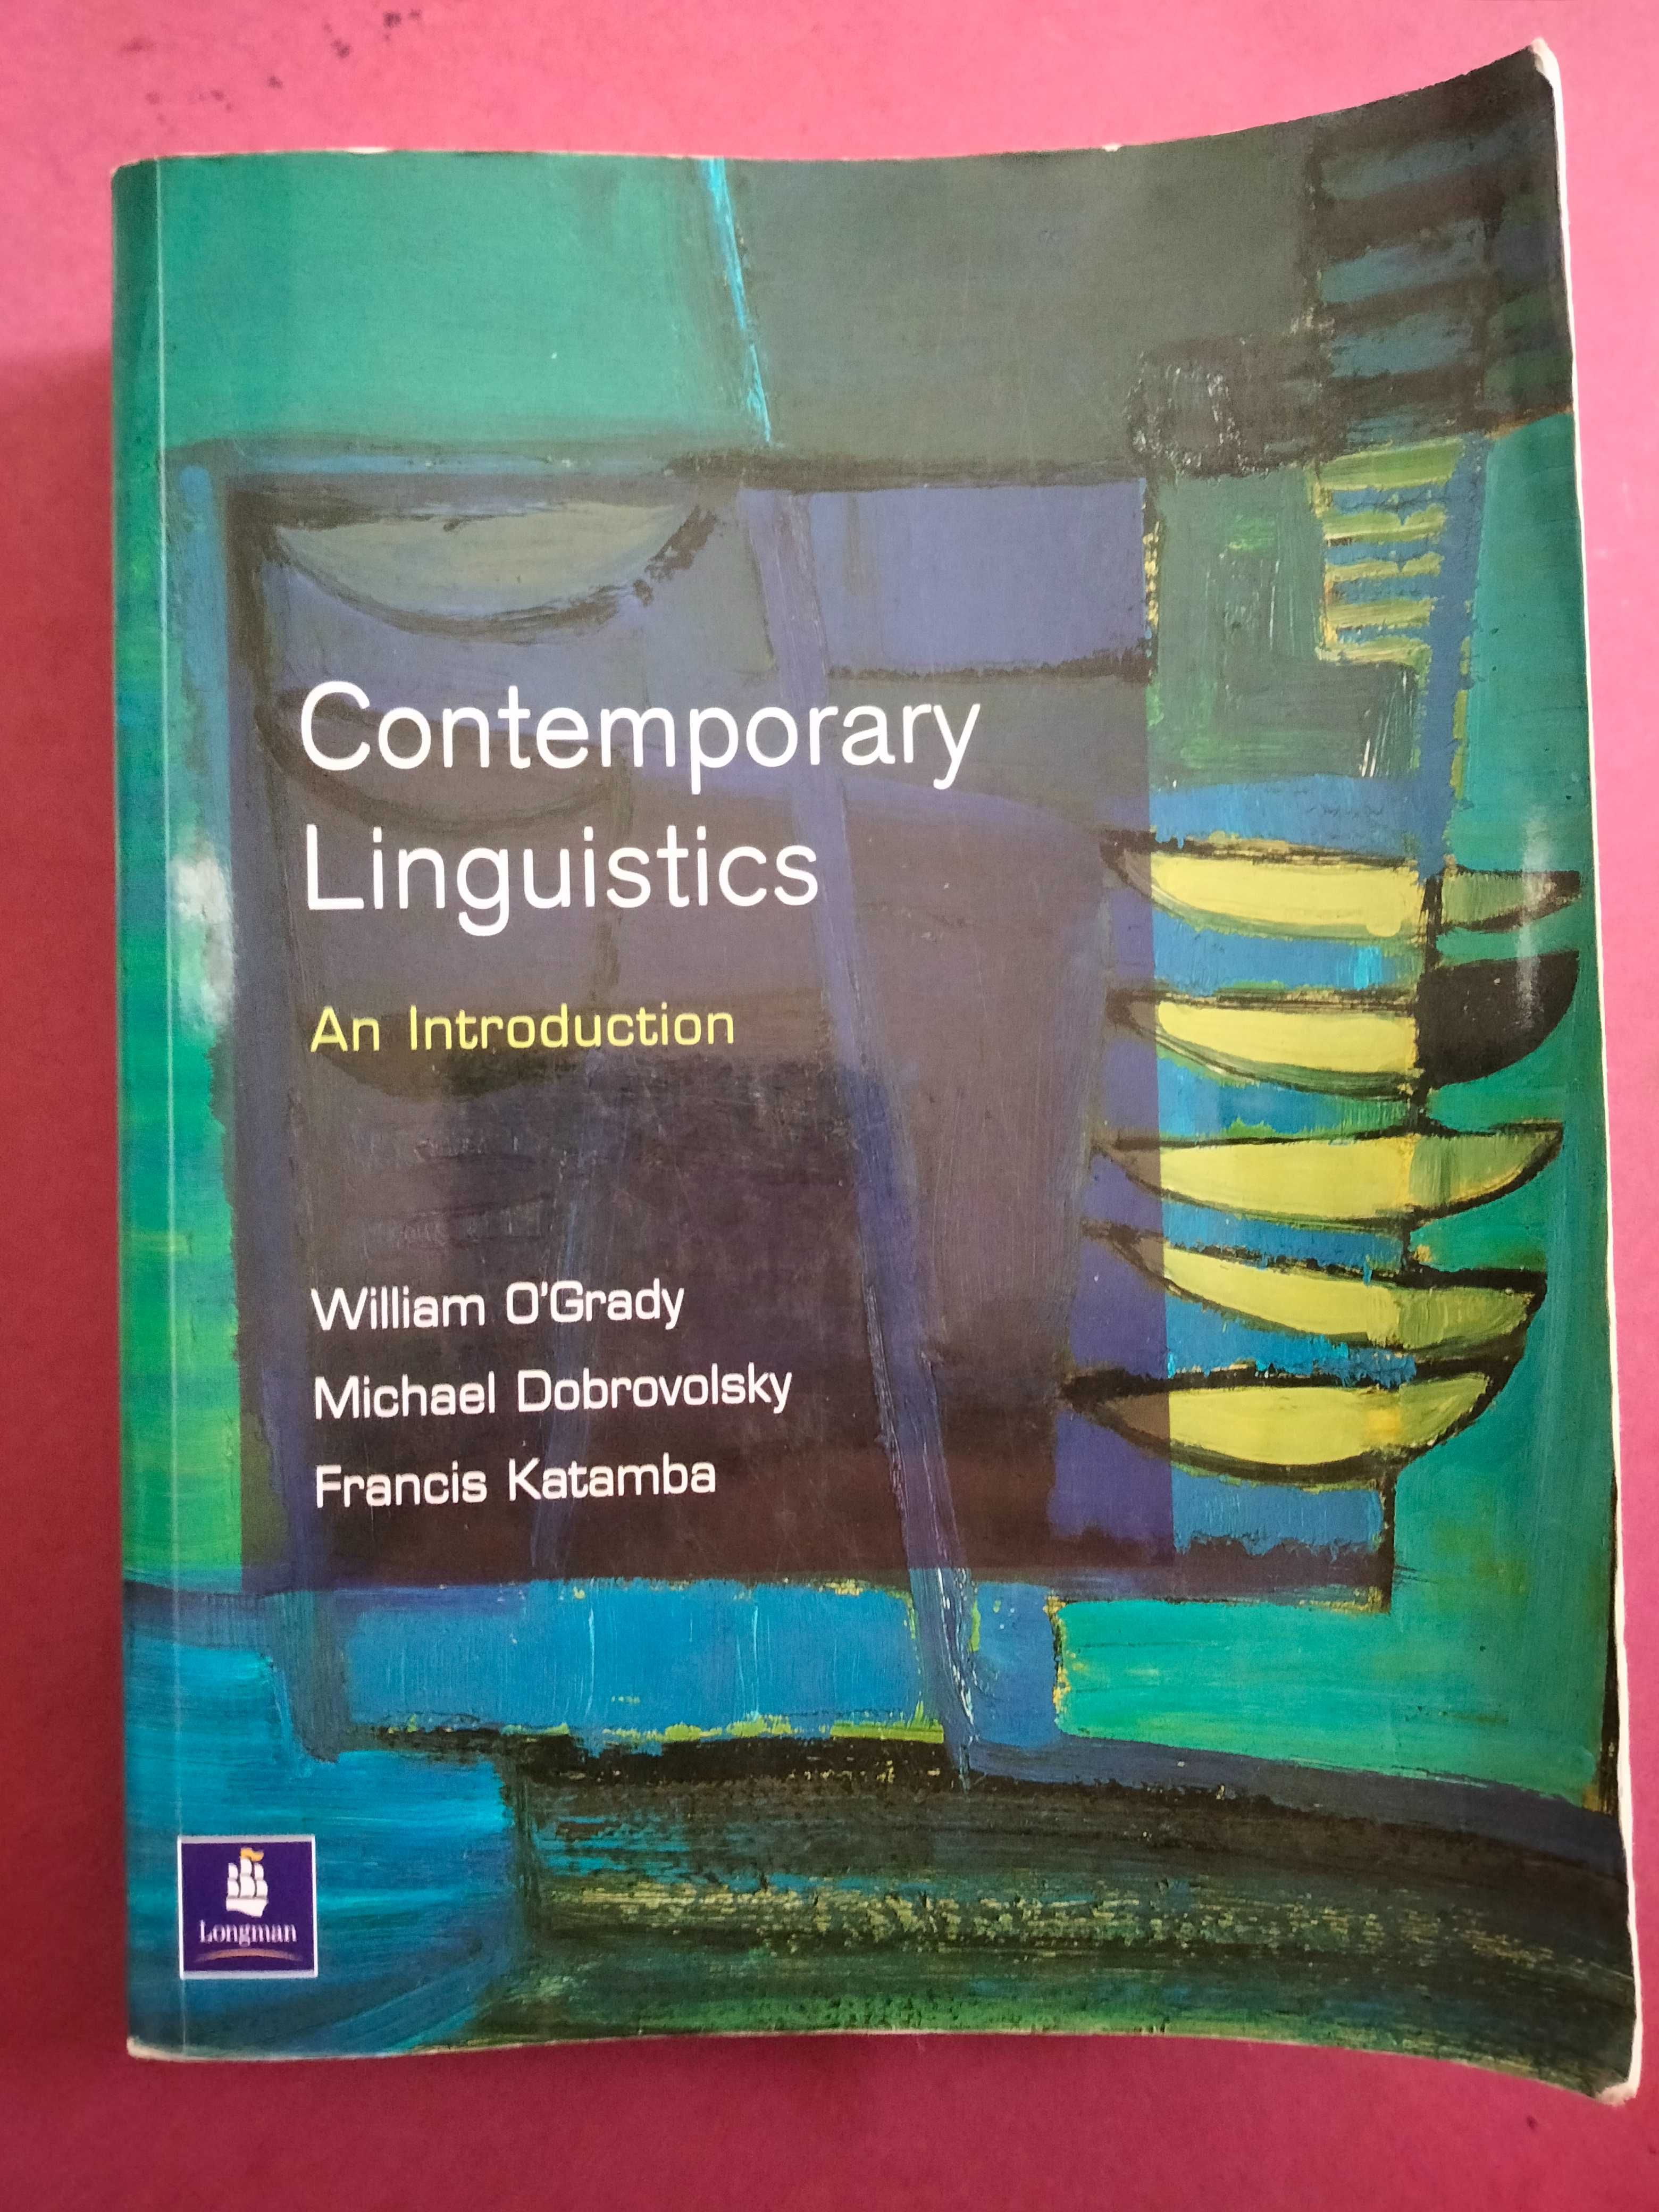 Contemporary Linguistics: An Introduction - William O'Grady